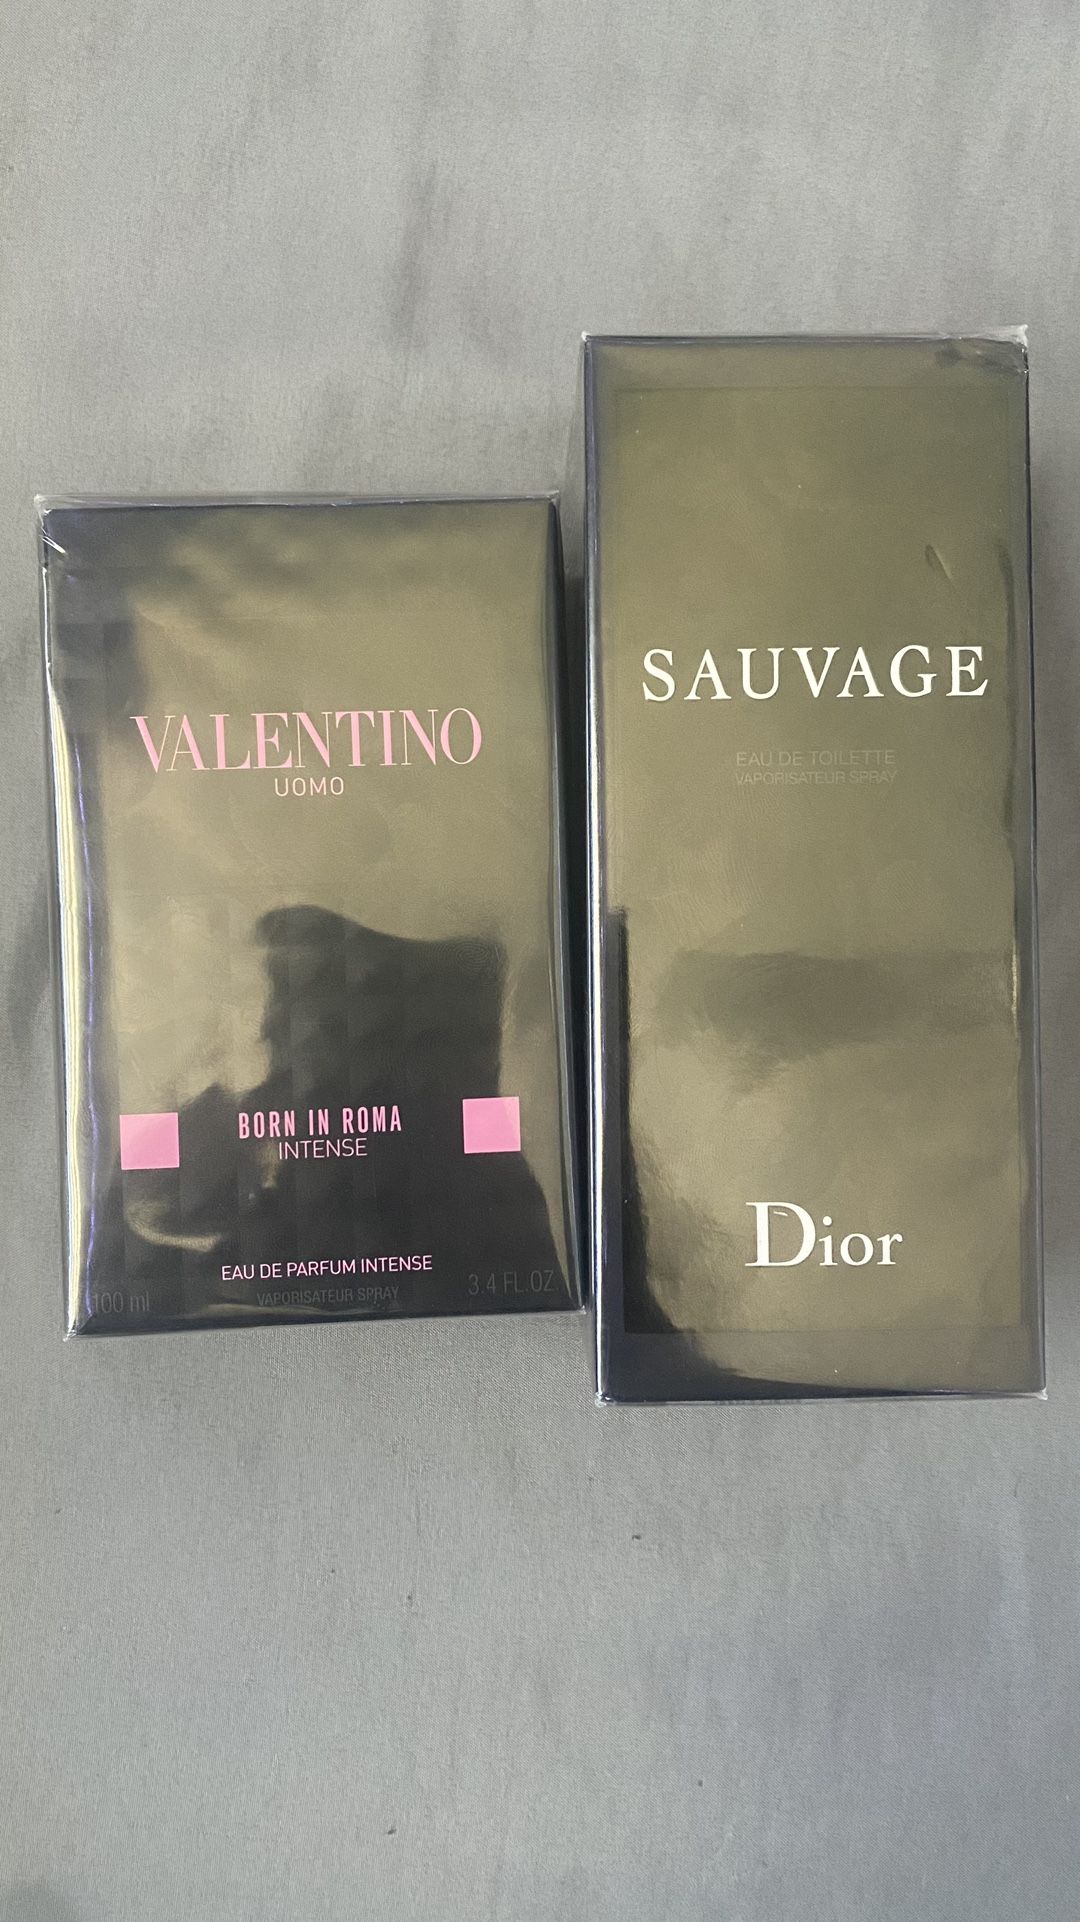 Dior Sauvage and Valentino Born In Roma